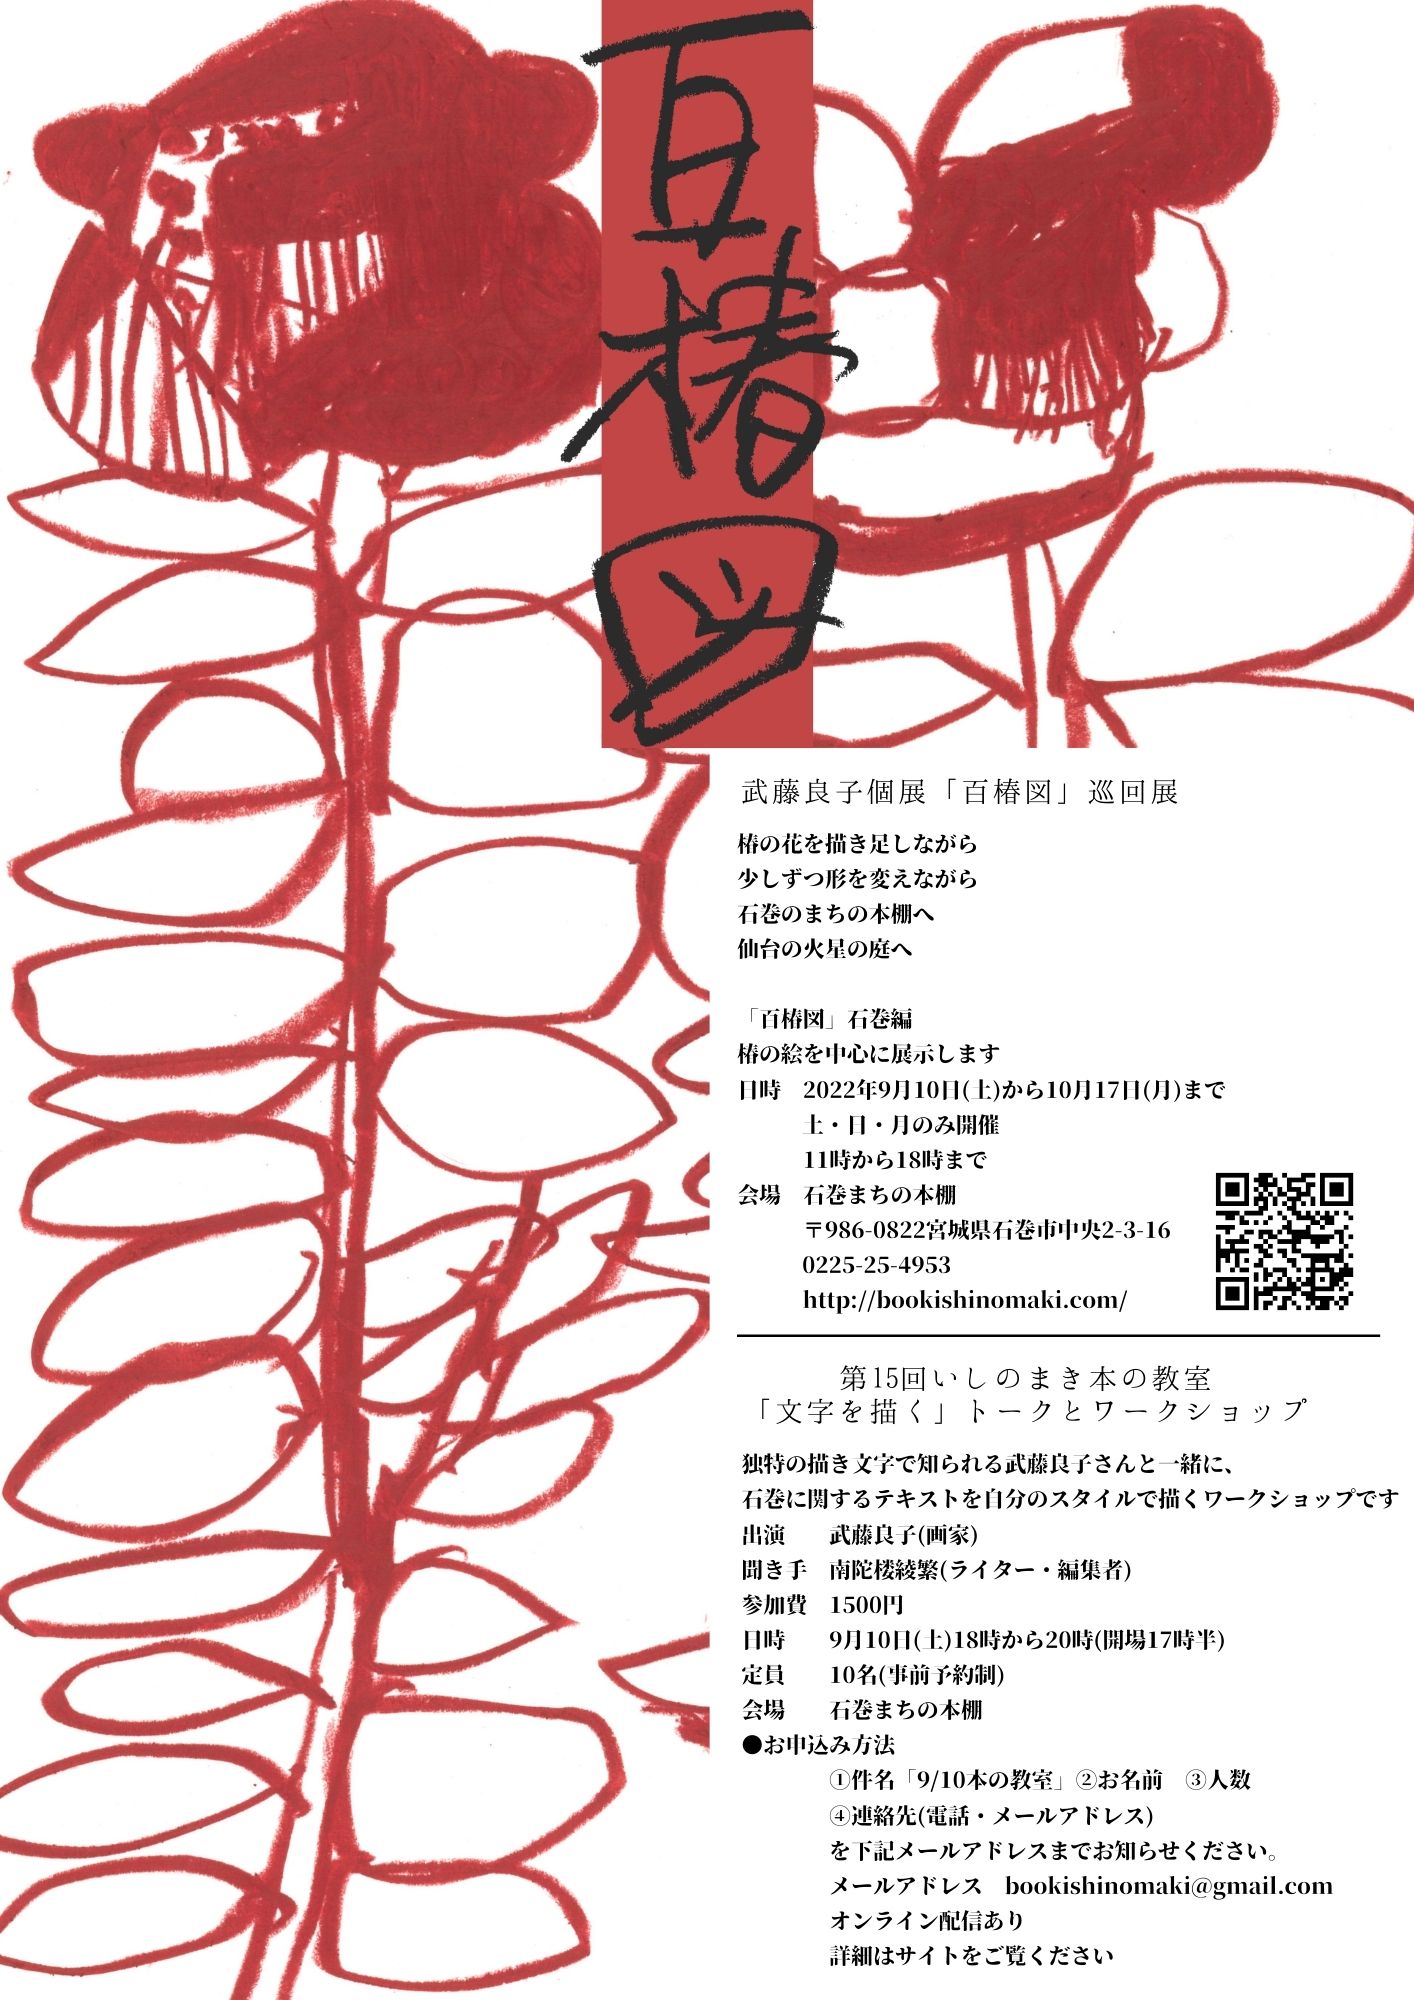 武藤良子個展「百椿図」巡回展 